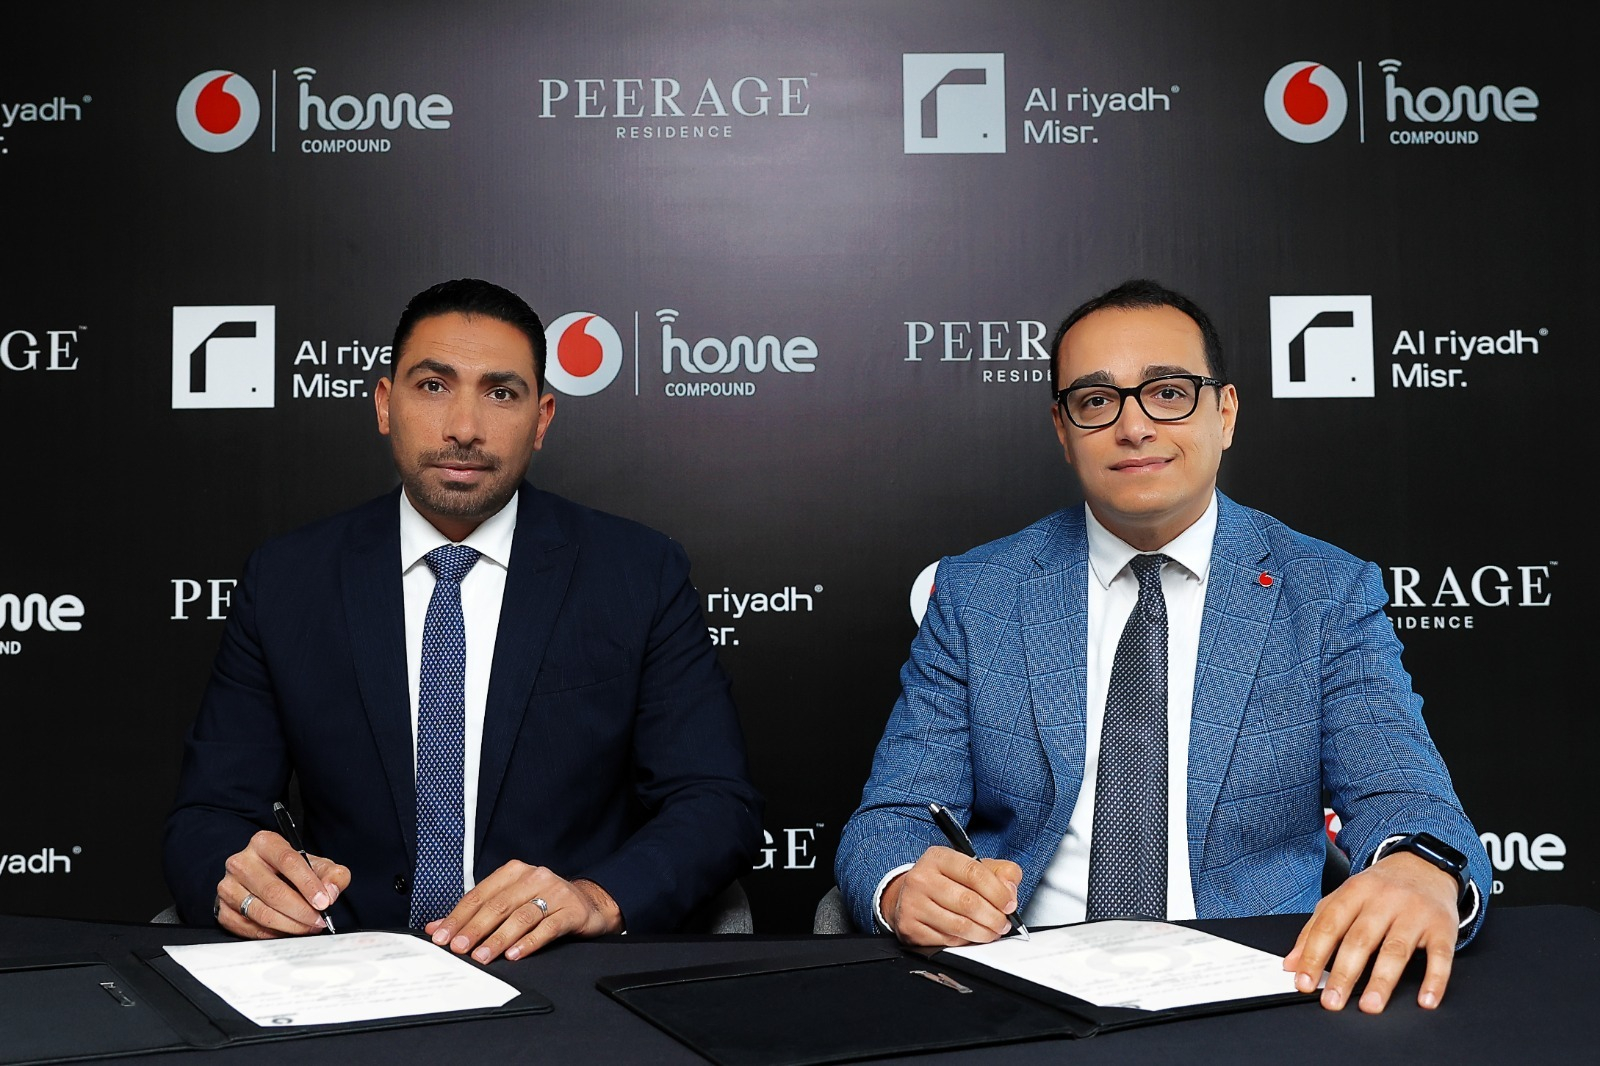 «ڤودافون مصر» و«الرياض مصر» توقعان اتفاقية شراكة لتقديم خدمات الاتصالات المتكاملة في مشروع Peerage القاهرة الجديدة